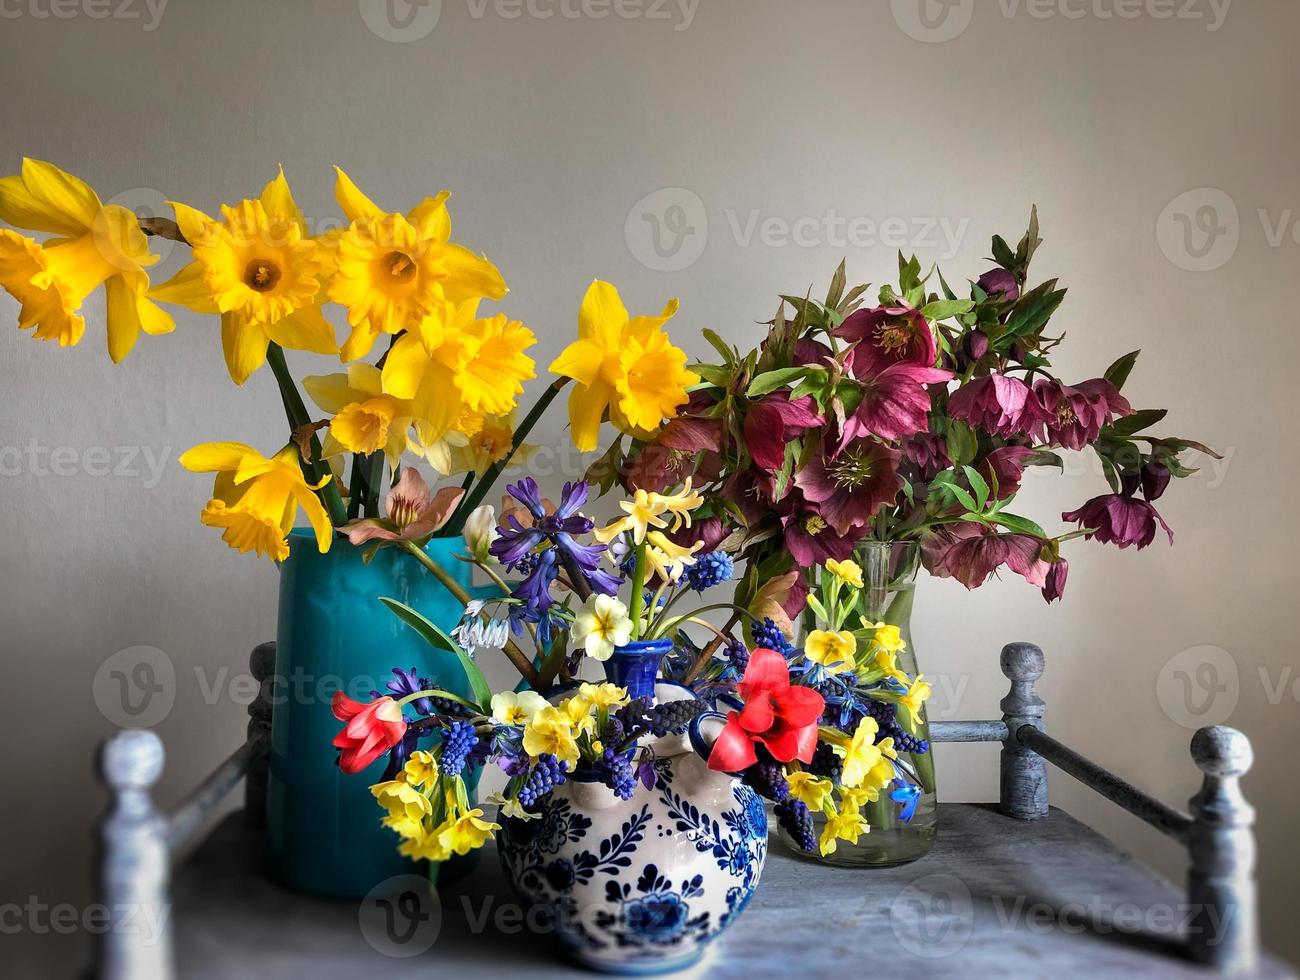 buquê romântico com narcisos, heléboro, jacintos, prímula, muscari e tulipas foto